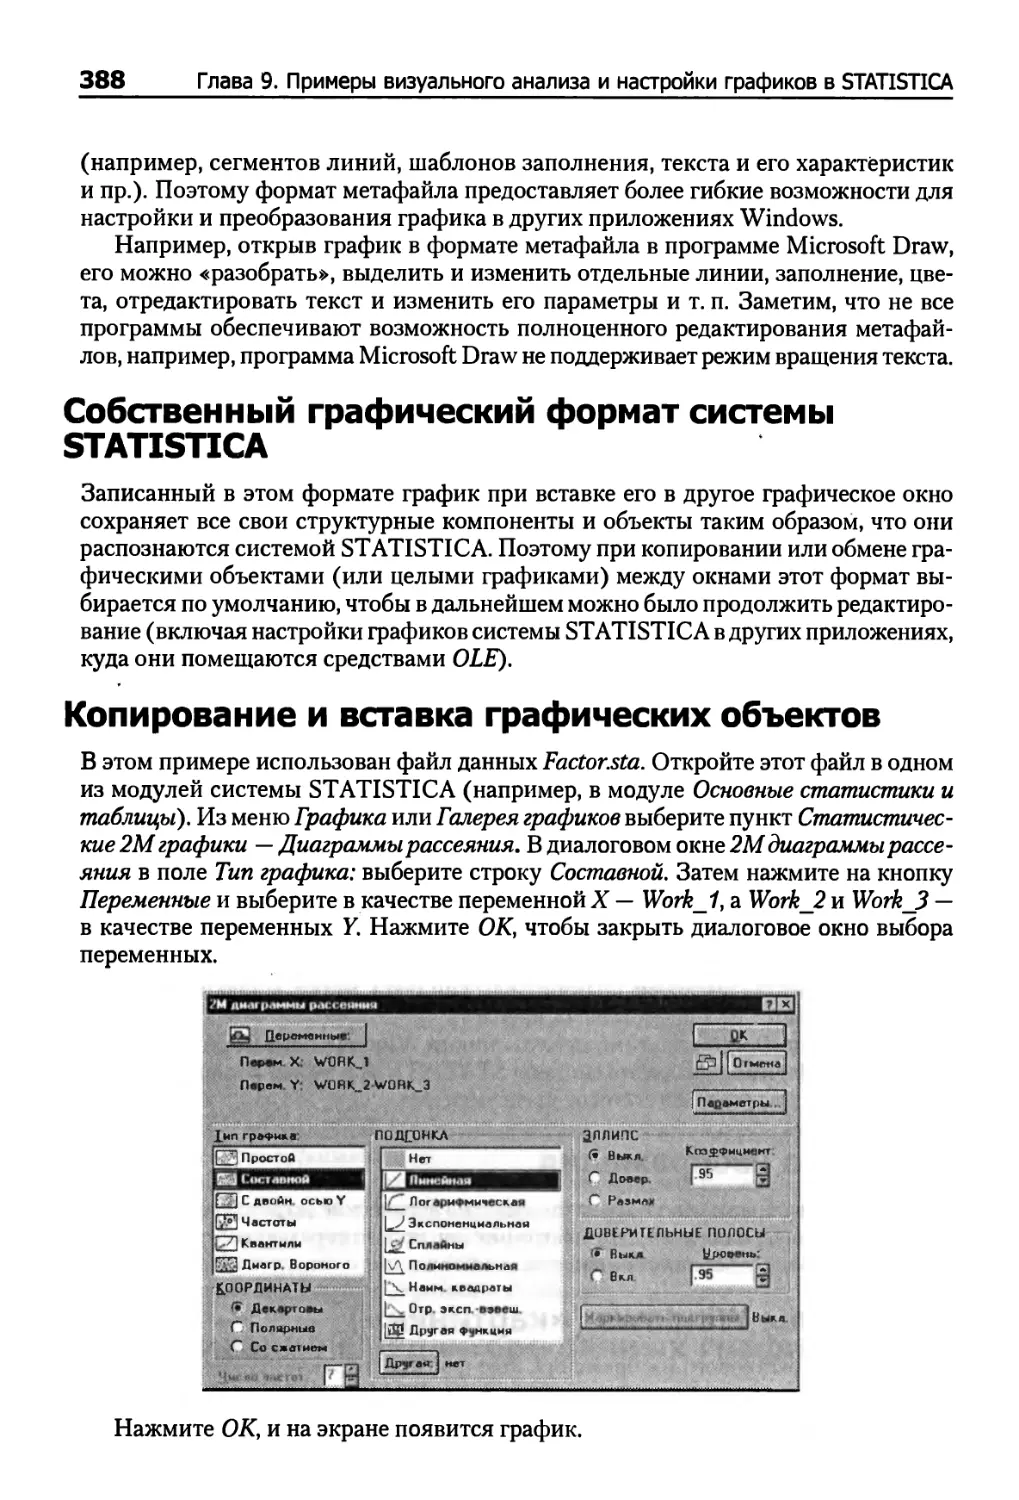 Собственный графический формат системы STATISTICA
Копирование и вставка графических объектов